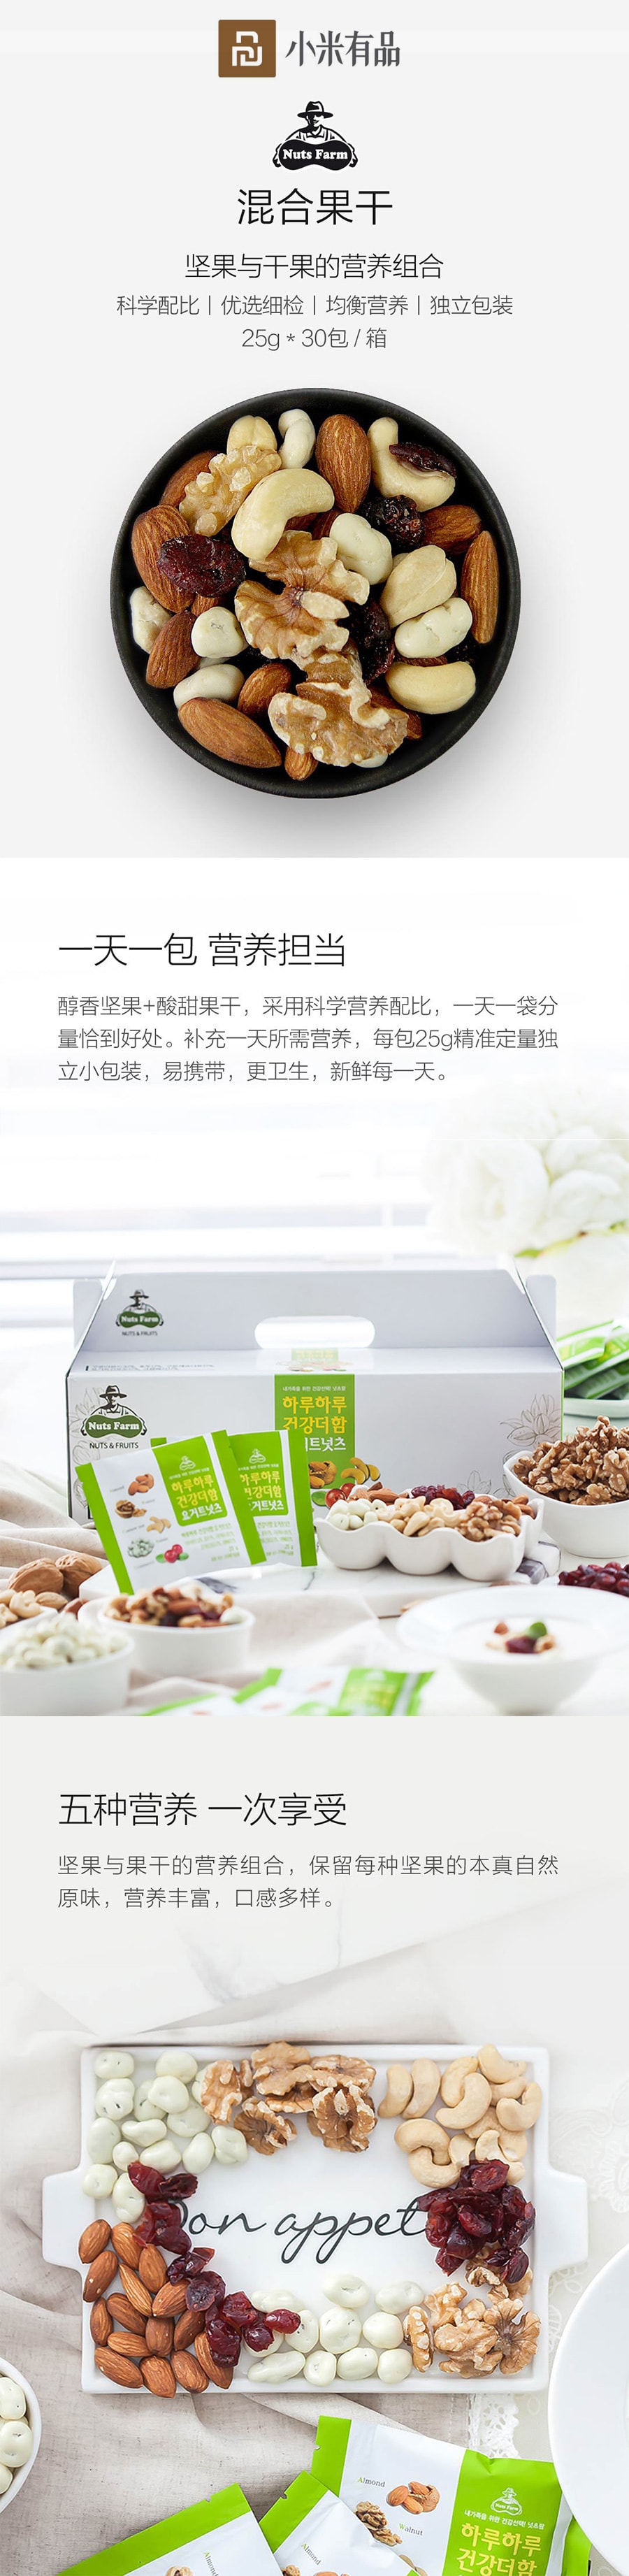 【中国直邮】小米有品Nuts Farm 混合果干 25g*30包/盒